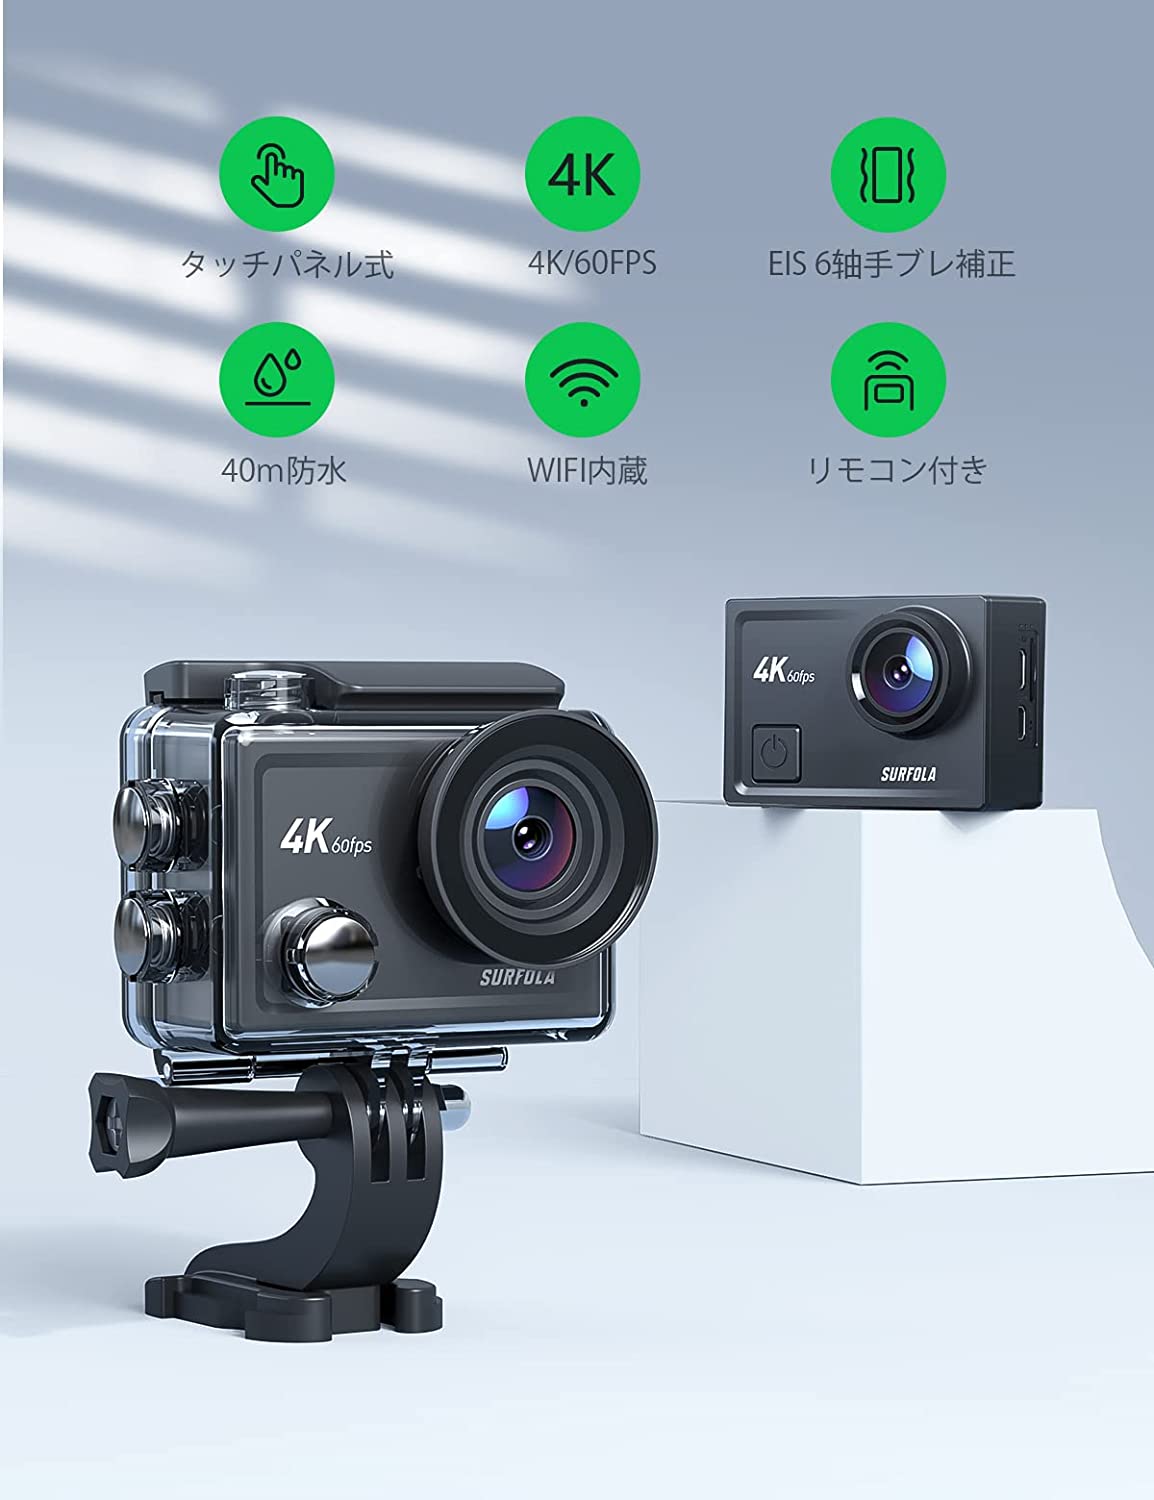 アクションカメラ 4K 60fps ウェアラブルカメラ Surfola EIS 豊富なアクセサリー SF430 8倍デジタルズーム SONY製